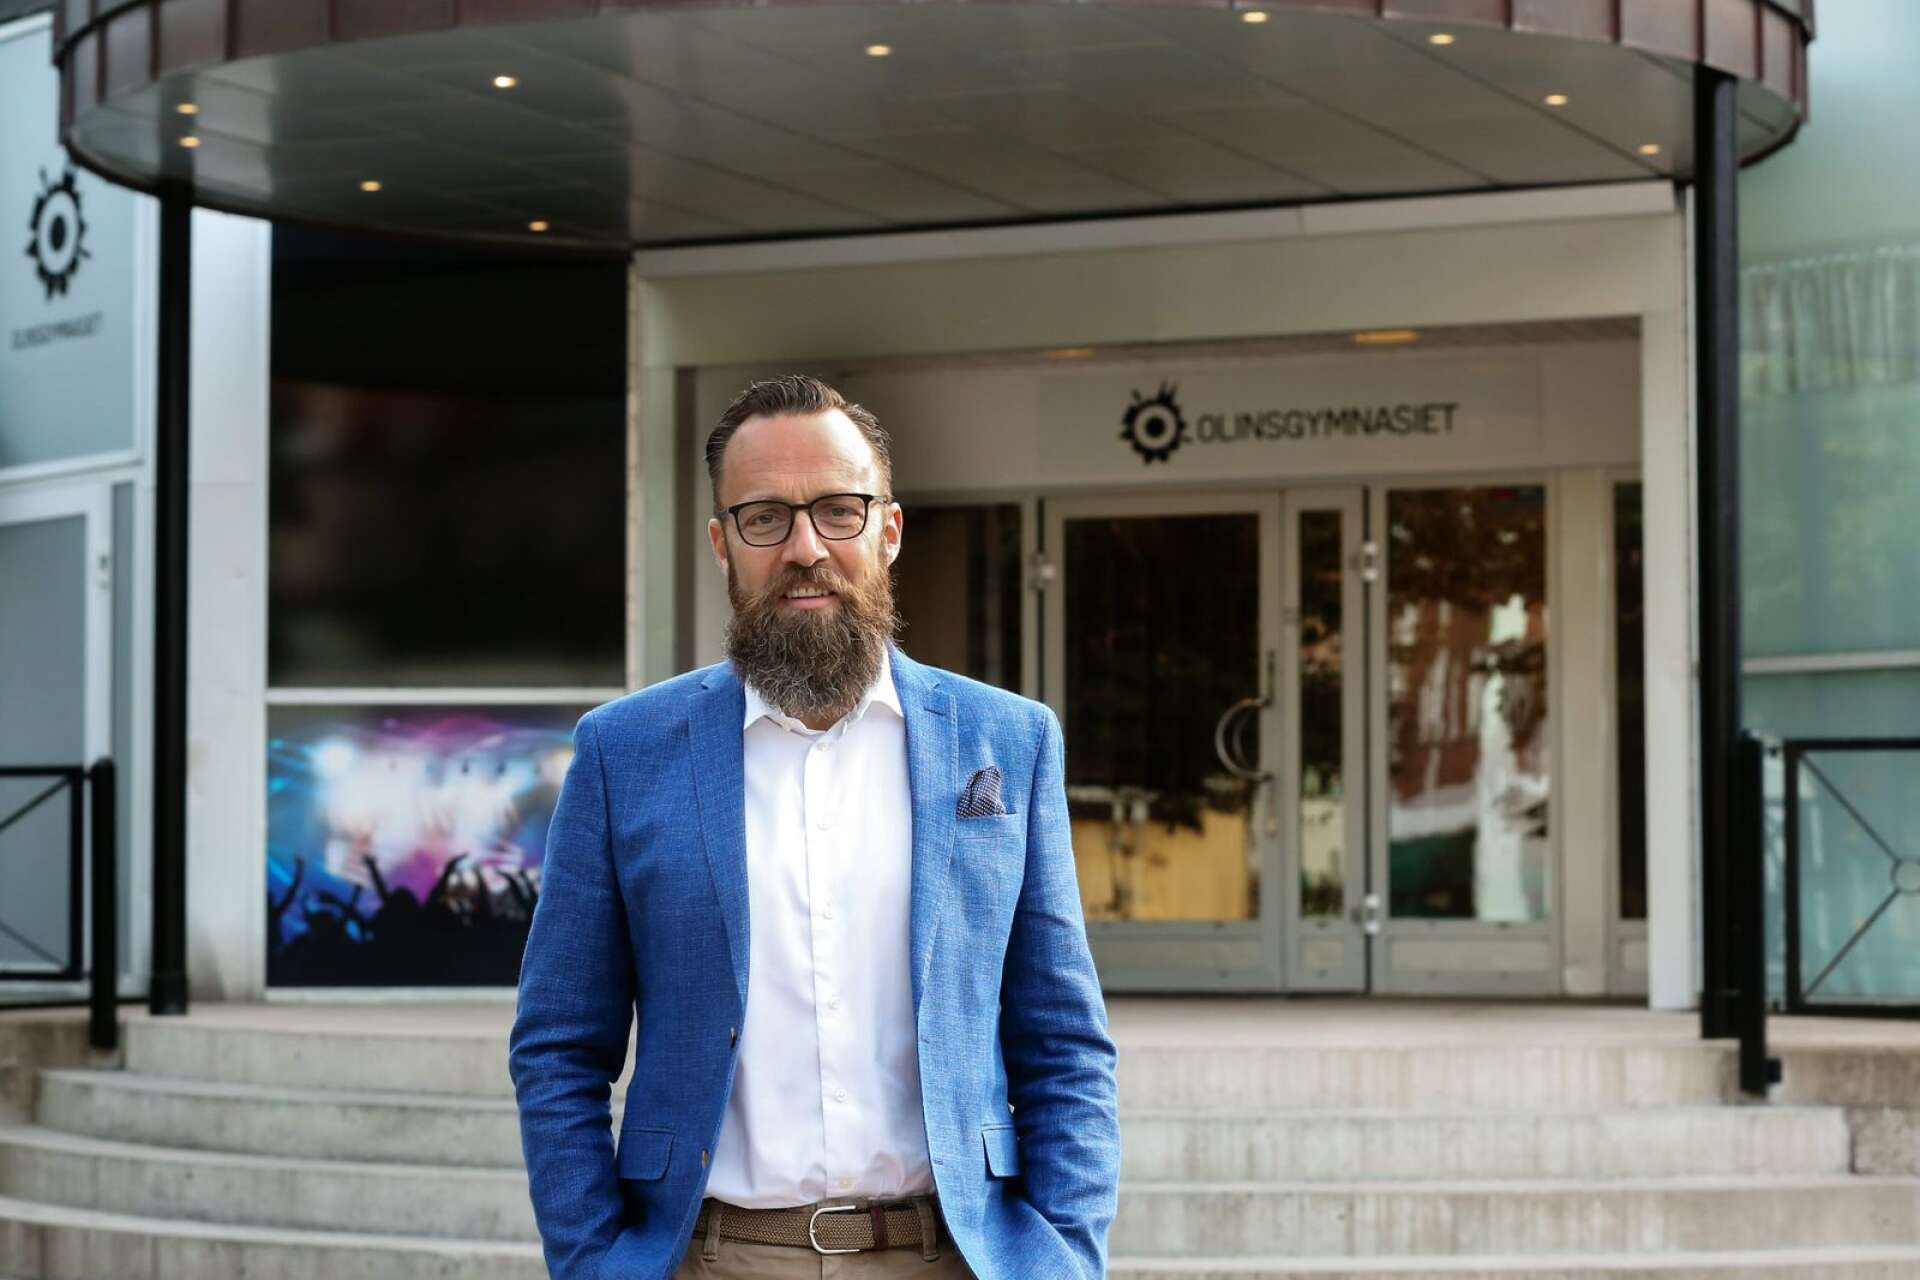 Kristian Wejshag förknippas främst för sin roll som huvudman för Olinsgymnasiet i Götene, Mariestad och Skara. I 2023 års upplaga av Melodifestivalen står han som en av fem låtskrivare bakom låten ”Raggen går”.